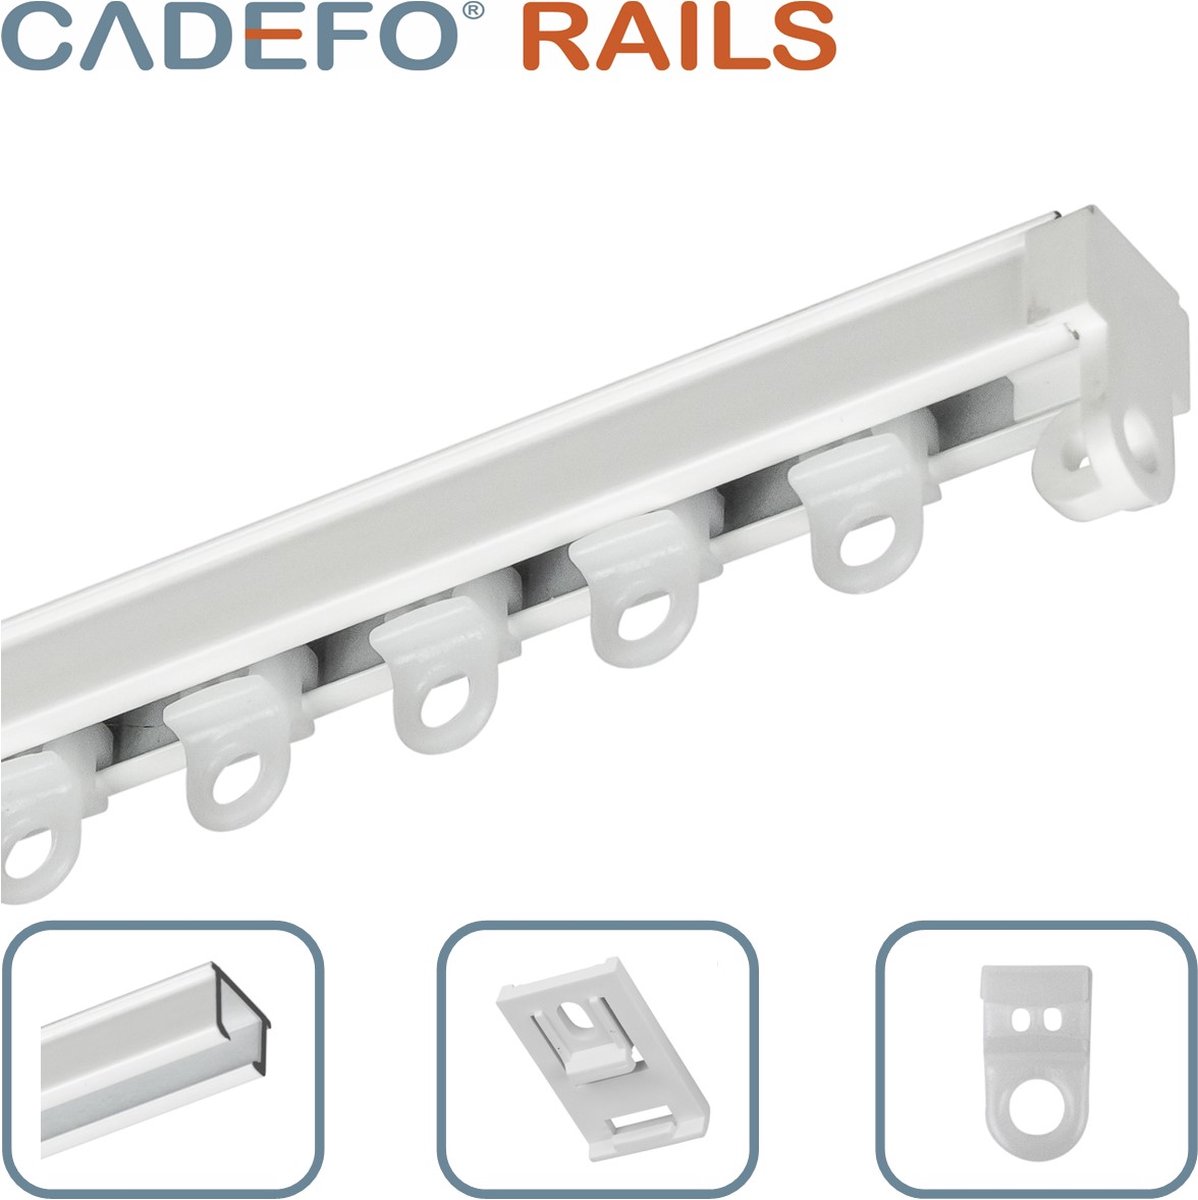 CADEFO RAILS (301 - 350 cm) Gordijnrails - Compleet op maat! - UIT 1 STUK - Leverbaar tot 6 meter - Plafondbevestiging - Lengte 335 cm